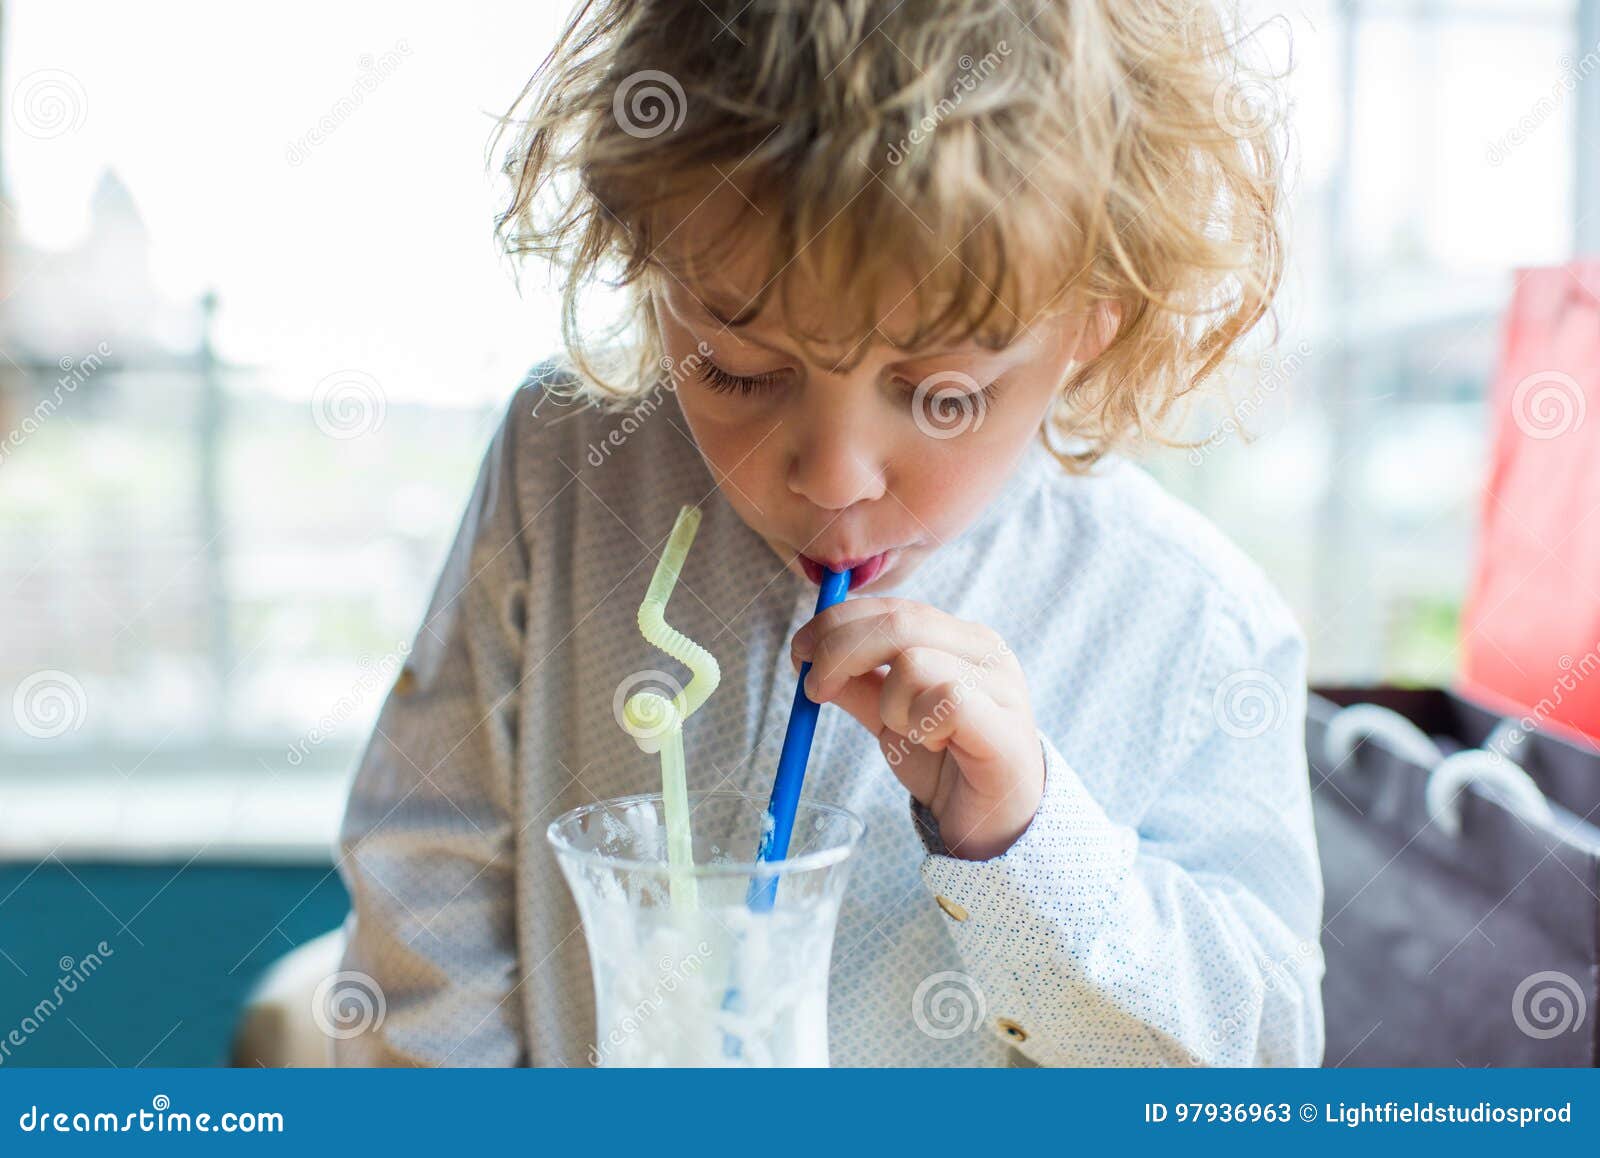 Дети пьют коктейли. Мальчик с молочным коктейлем. Мальчик пьет молочный коктейль. Картинки дети молоко коктейль. Дети пьют молочный коктейль.